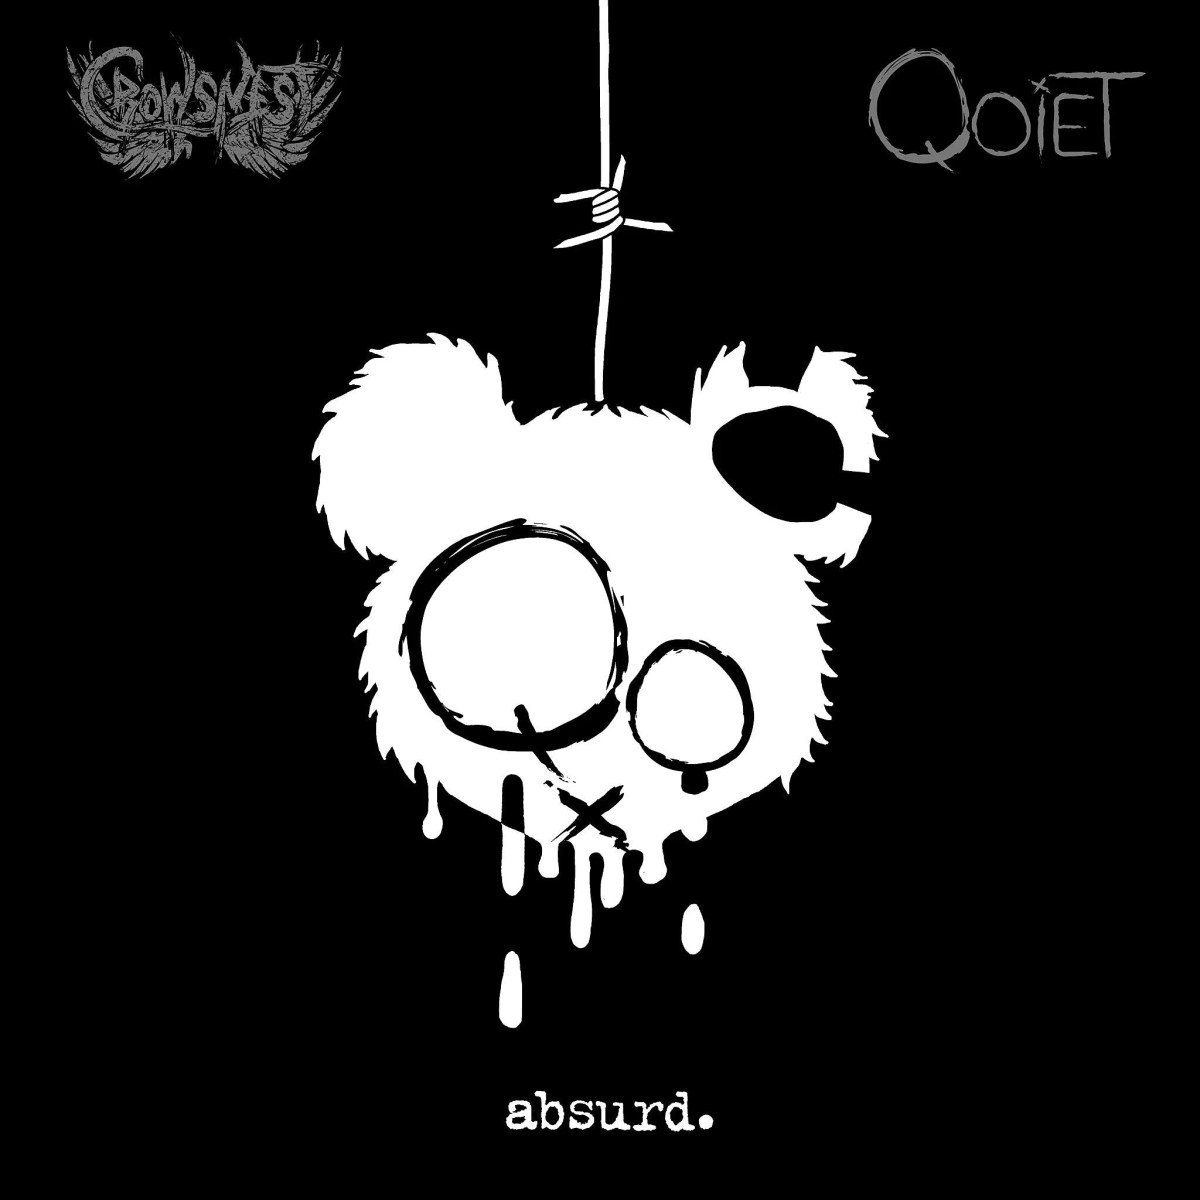 Qoiet Album Artwork for "Absurd" LP out now on CrowsNest Audio